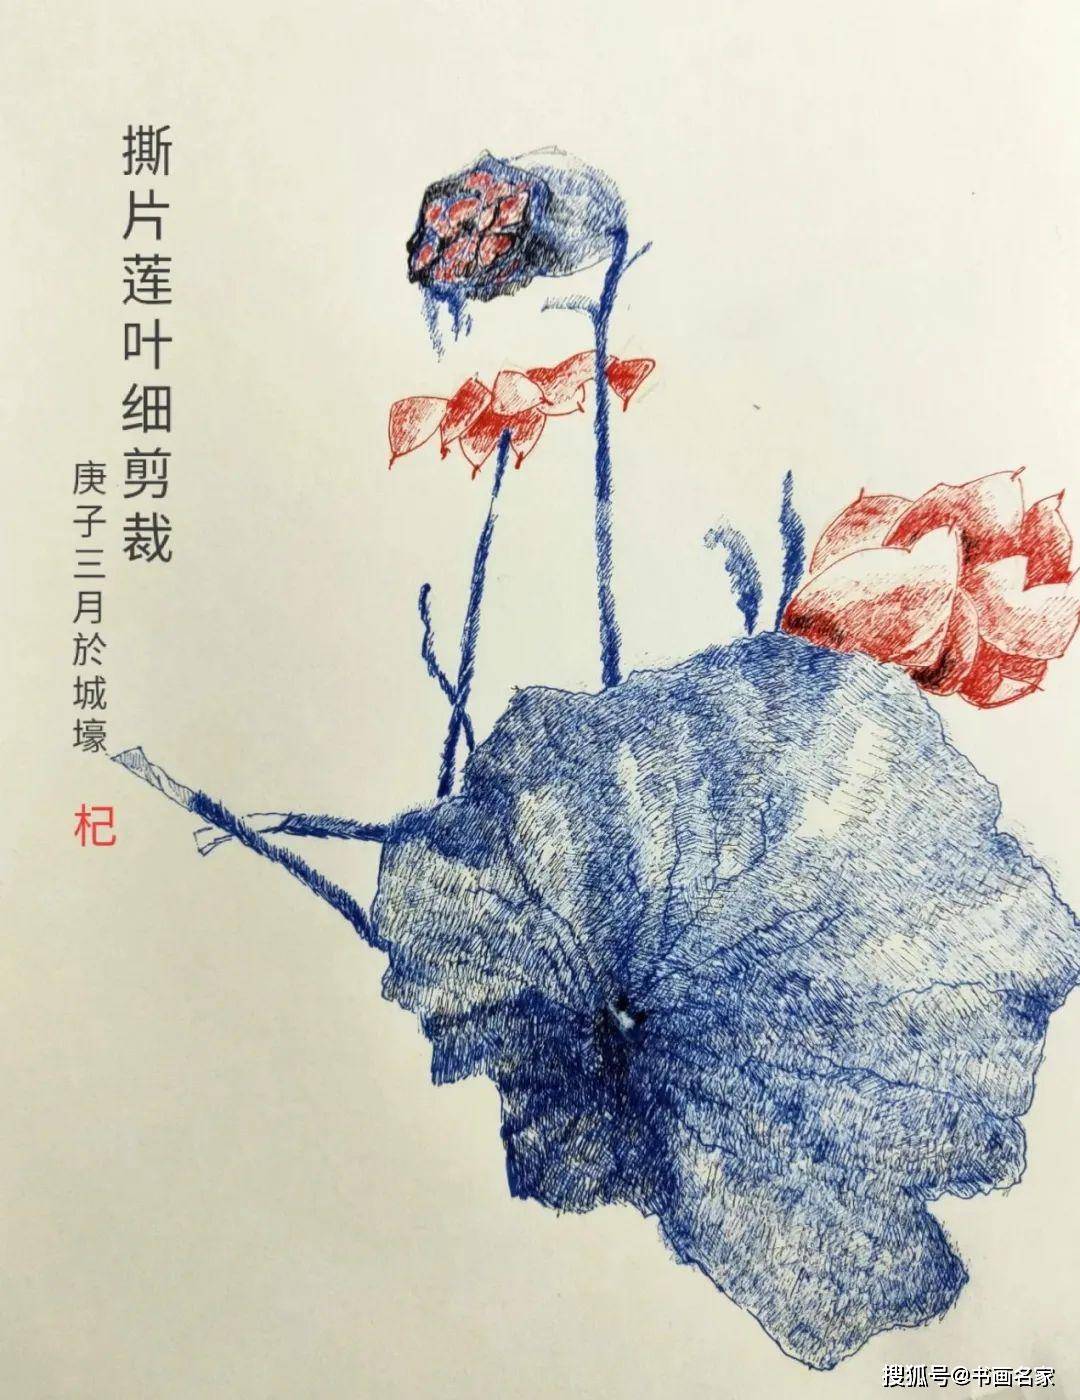 原创「艺术中国 」——方僧钢笔画艺术